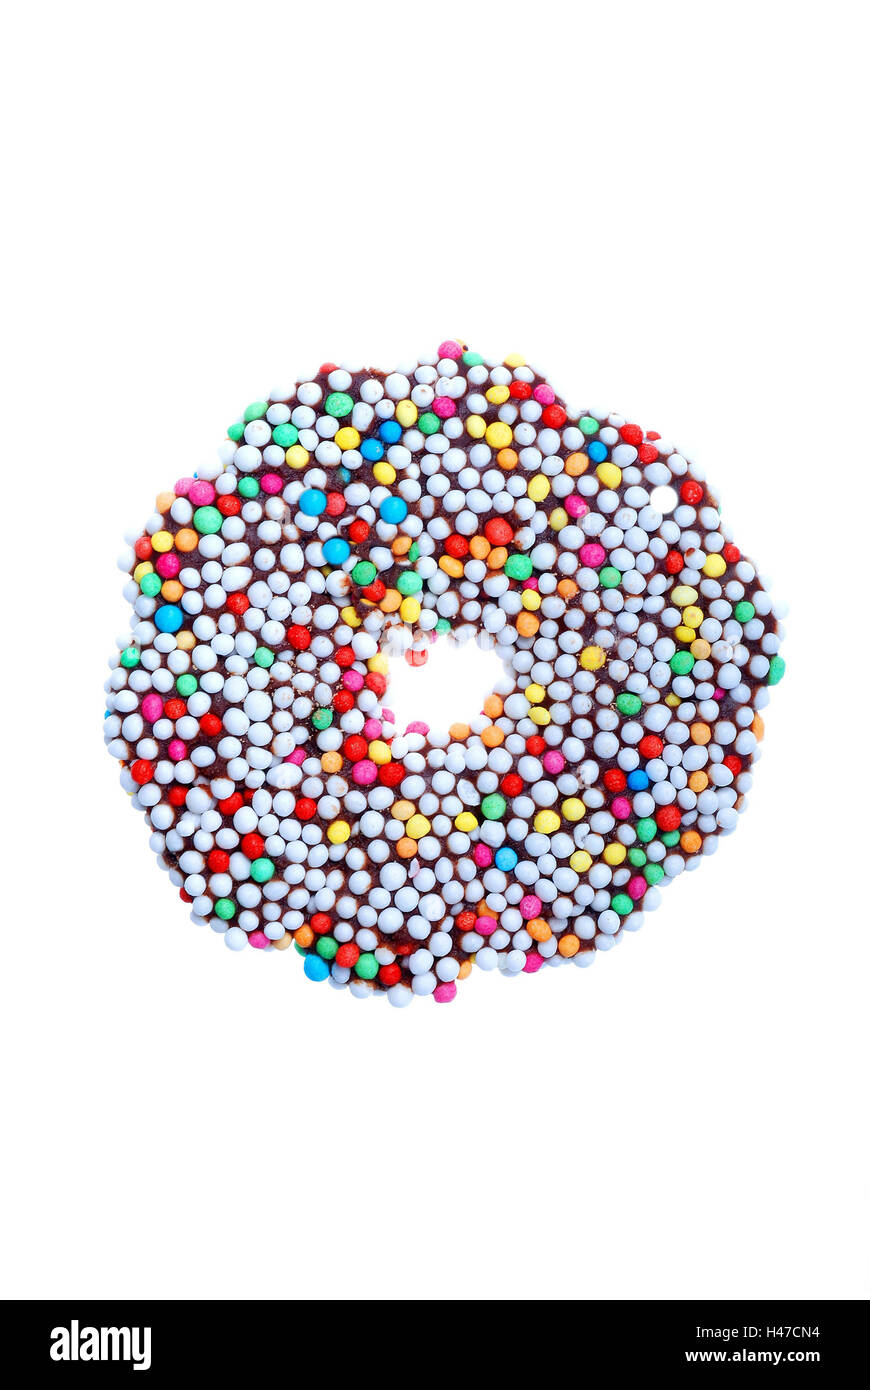 Weihnachten Süßwaren, Schokolade Ringe, Zucker-Perlen Stockfotografie -  Alamy